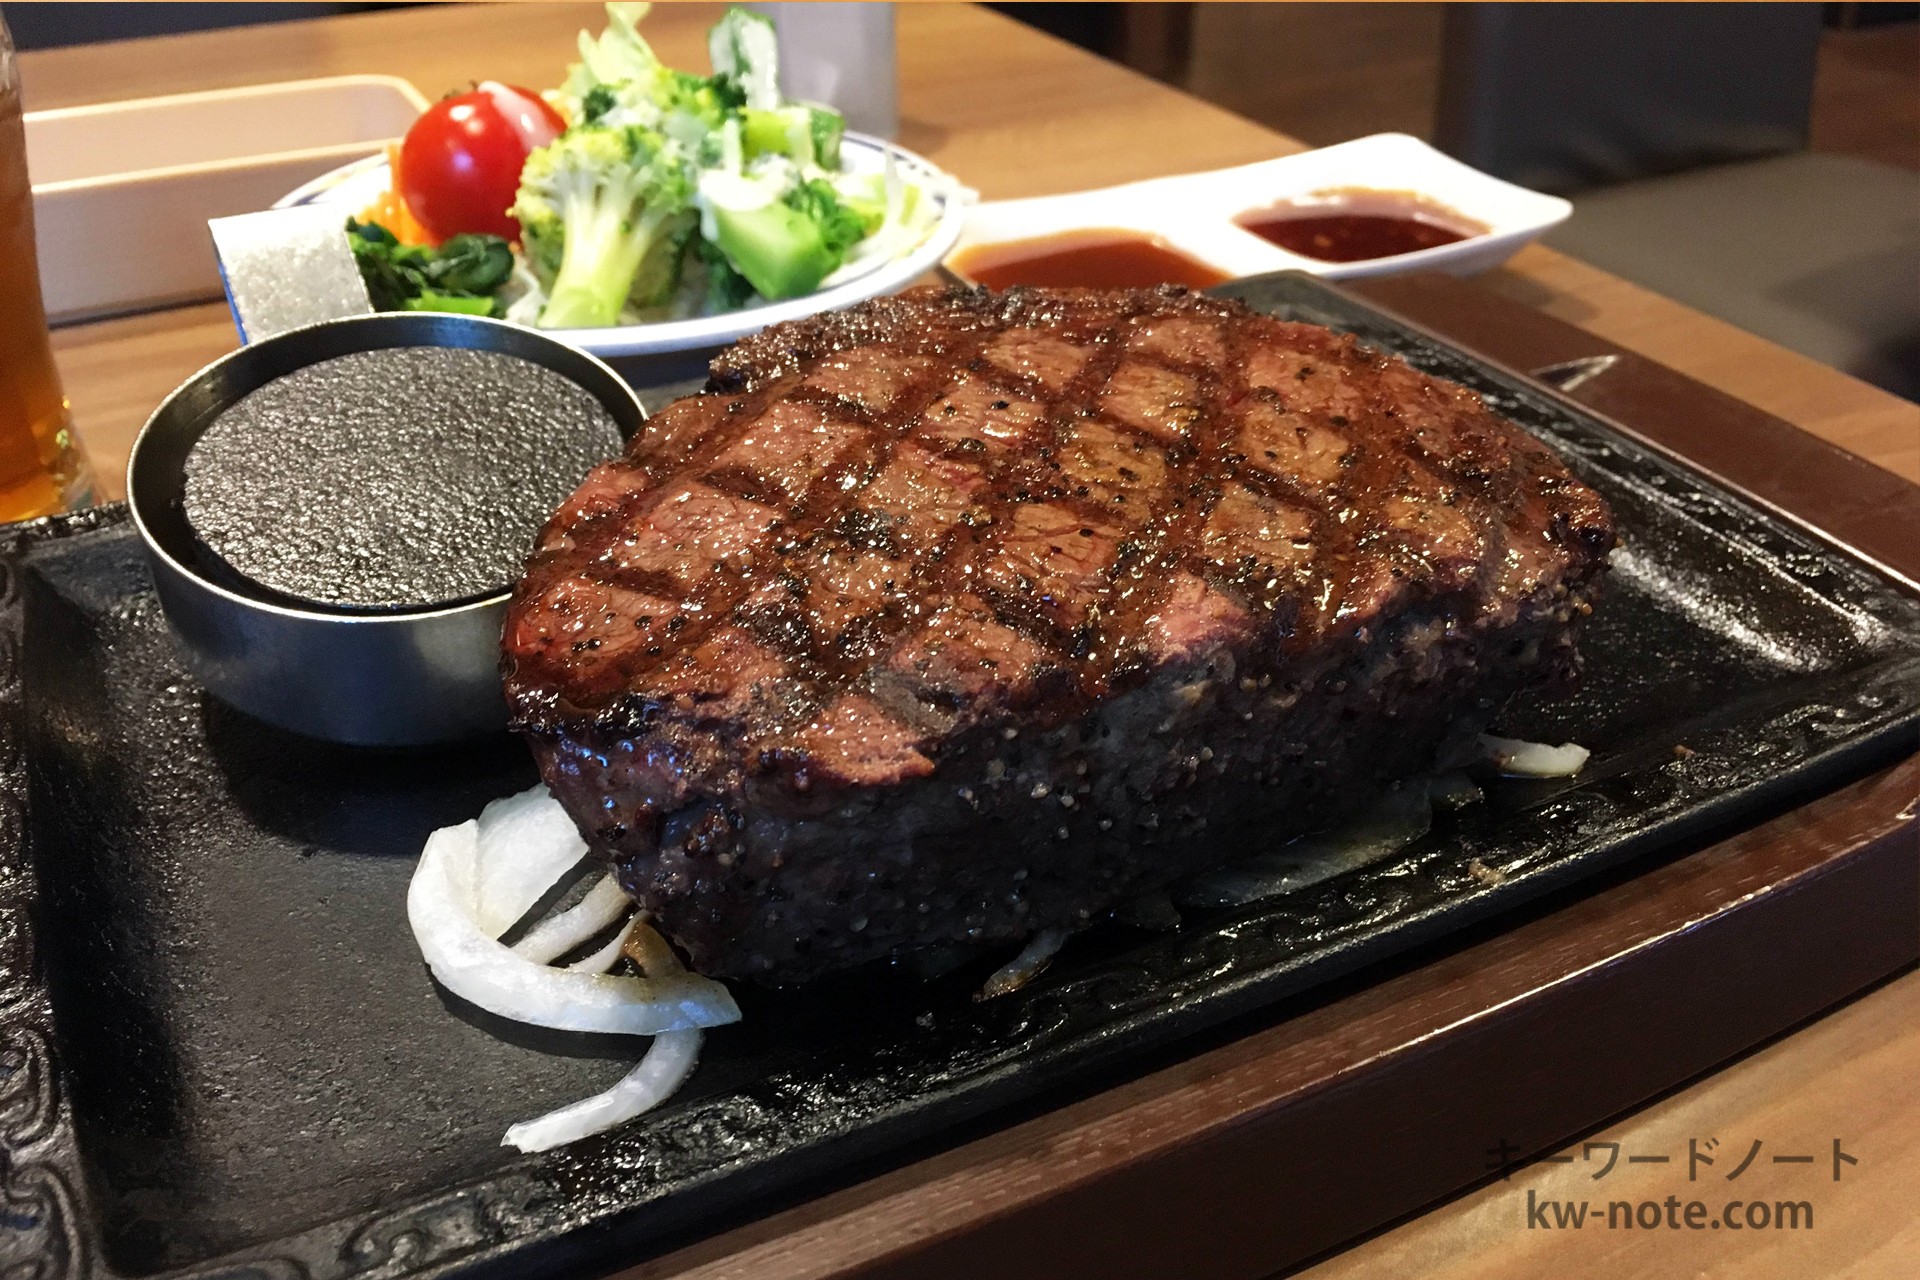 1ポンドのステーキはどれ位の大きさ 目安の写真と栄養成分も掲載 キーワードノート